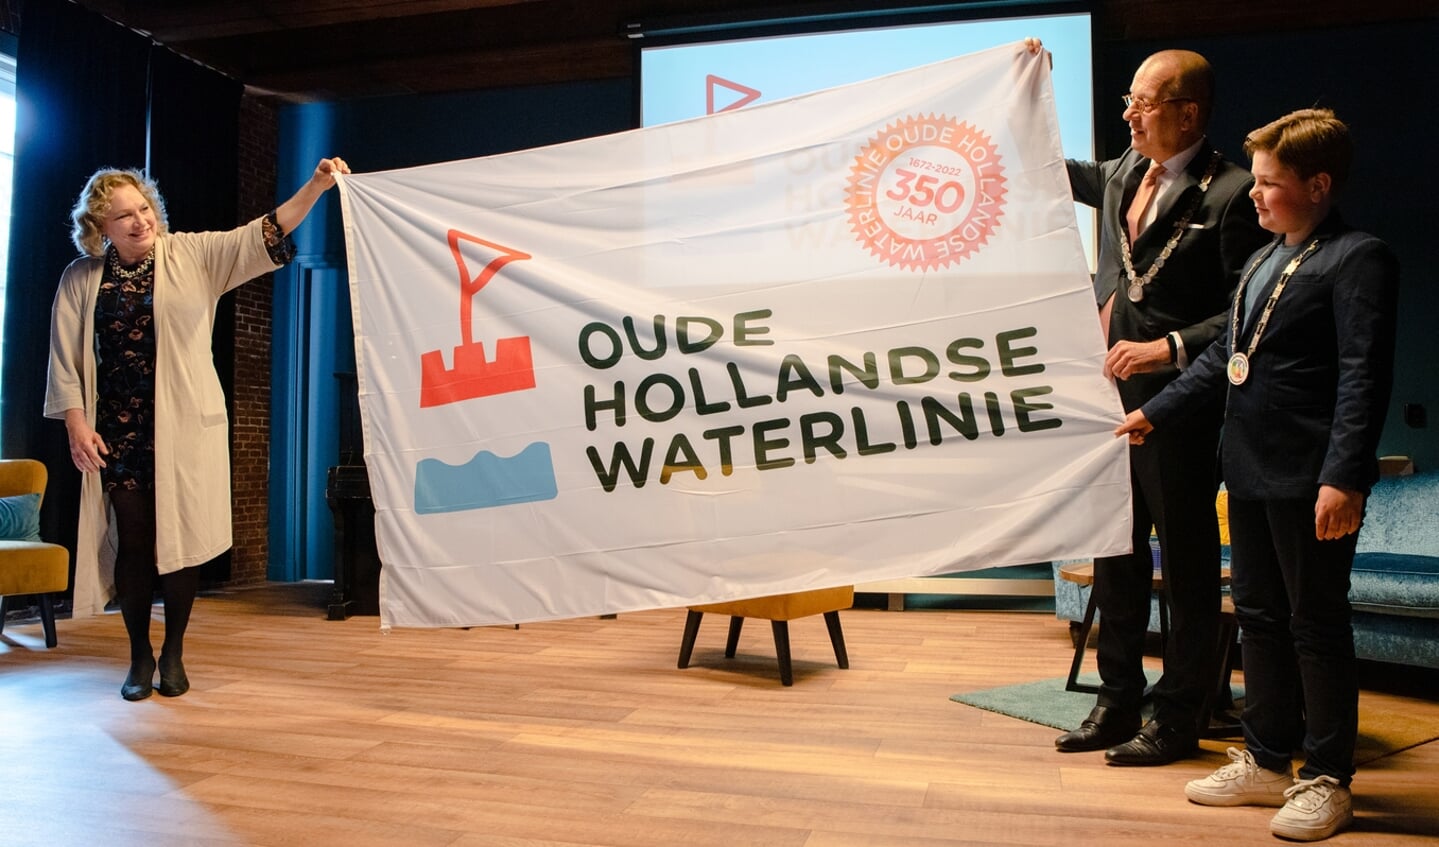 • De vlag van de Oude Hollandse Waterlinie wordt getoond.